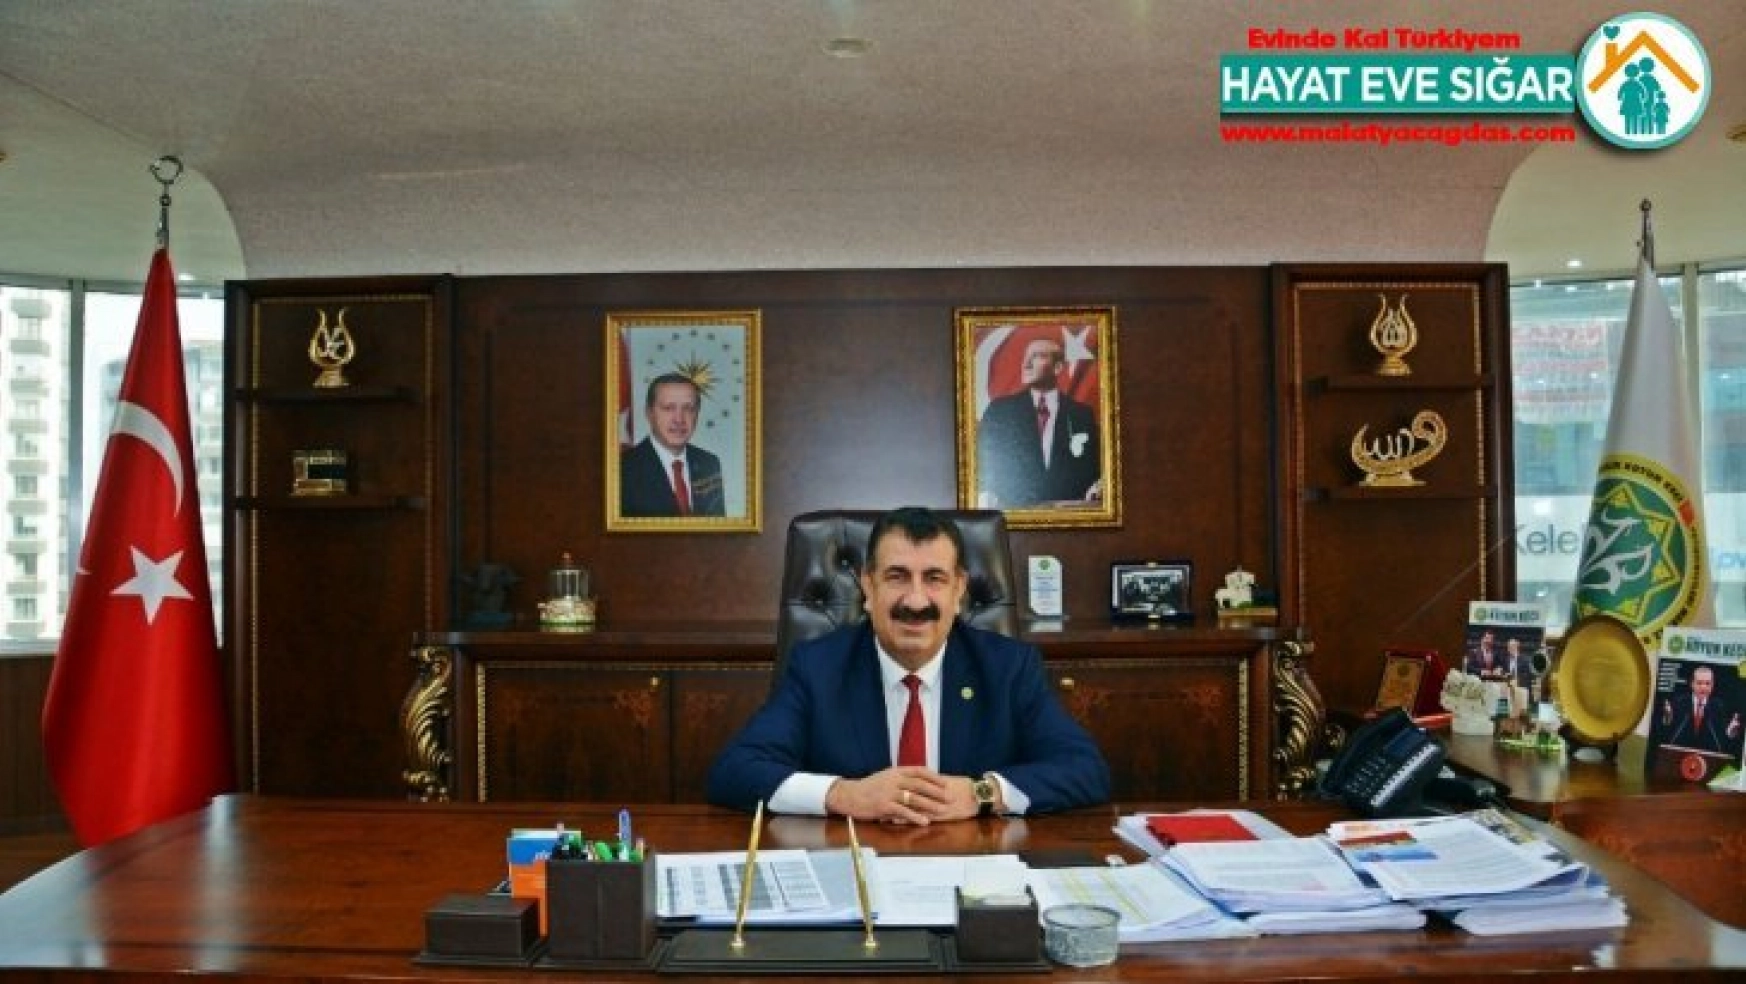 TÜDKİYEB Genel Başkanı Nihat Çelik, 'Biz Bize Yeteriz Türkiye'm' kampanyasına 3 aylık maaşı ile destek verdi